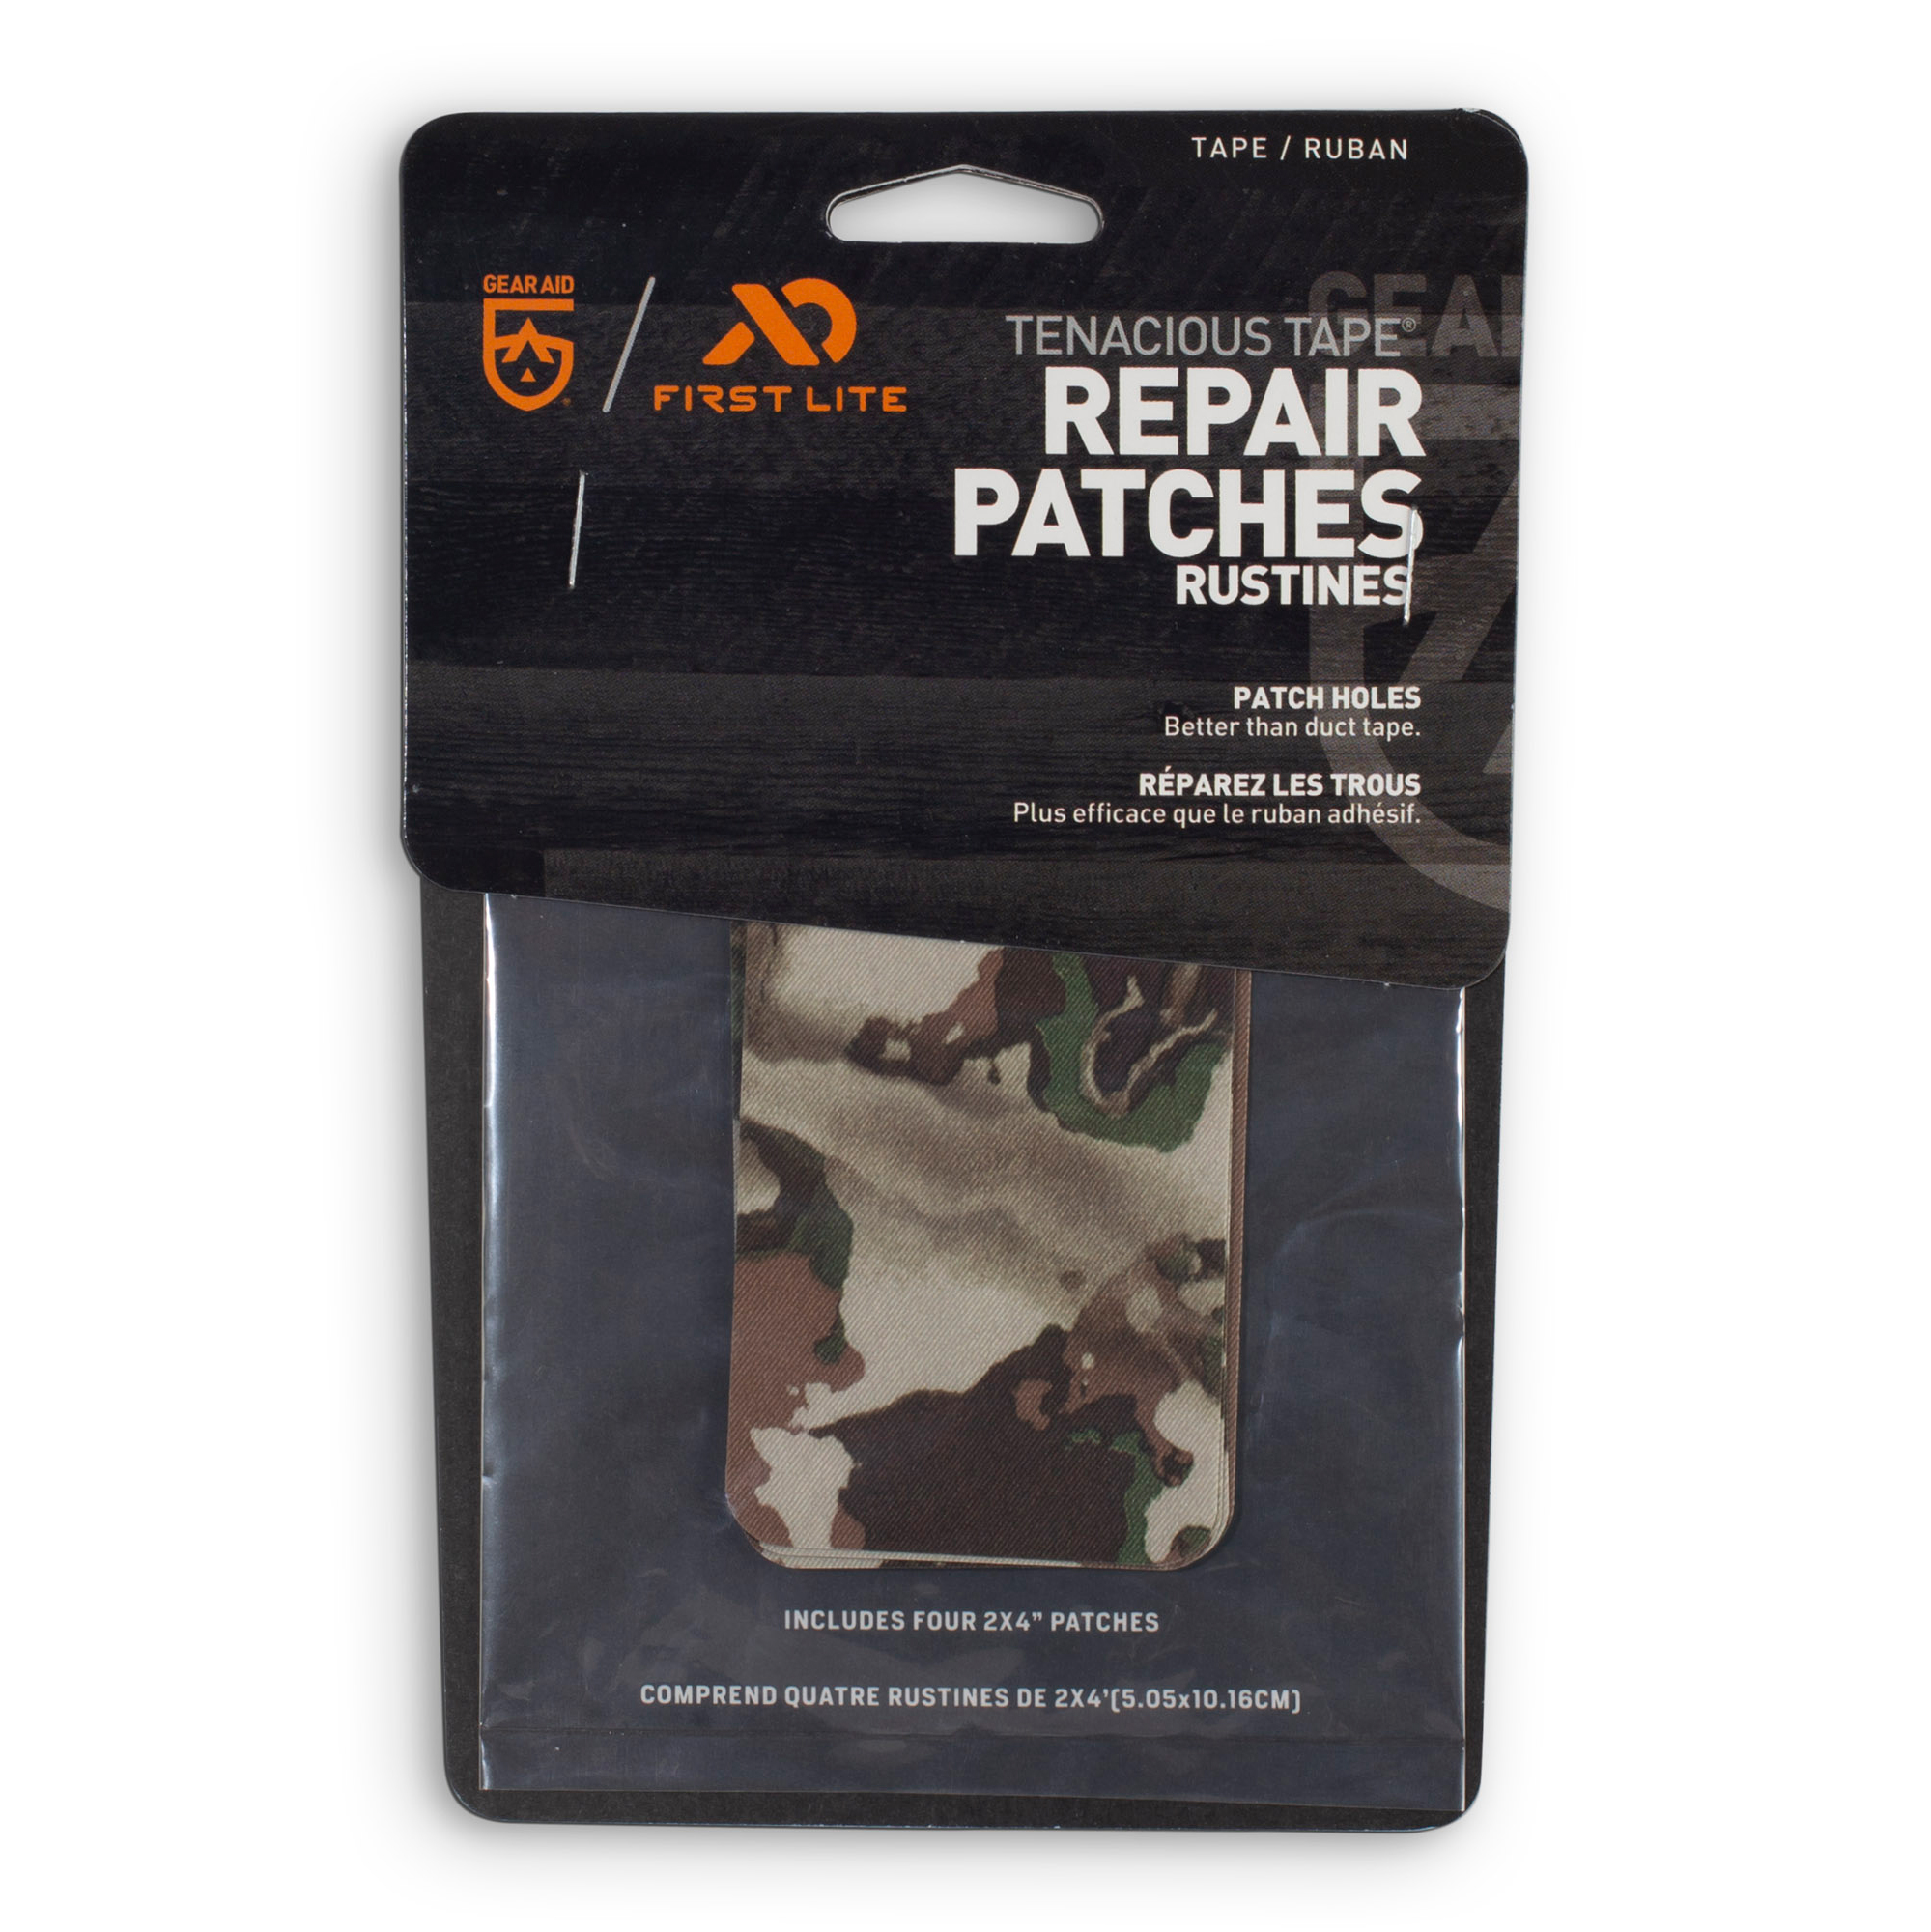 Tenacious Tape Repair Patches by Gear Aid at Fleet Farm